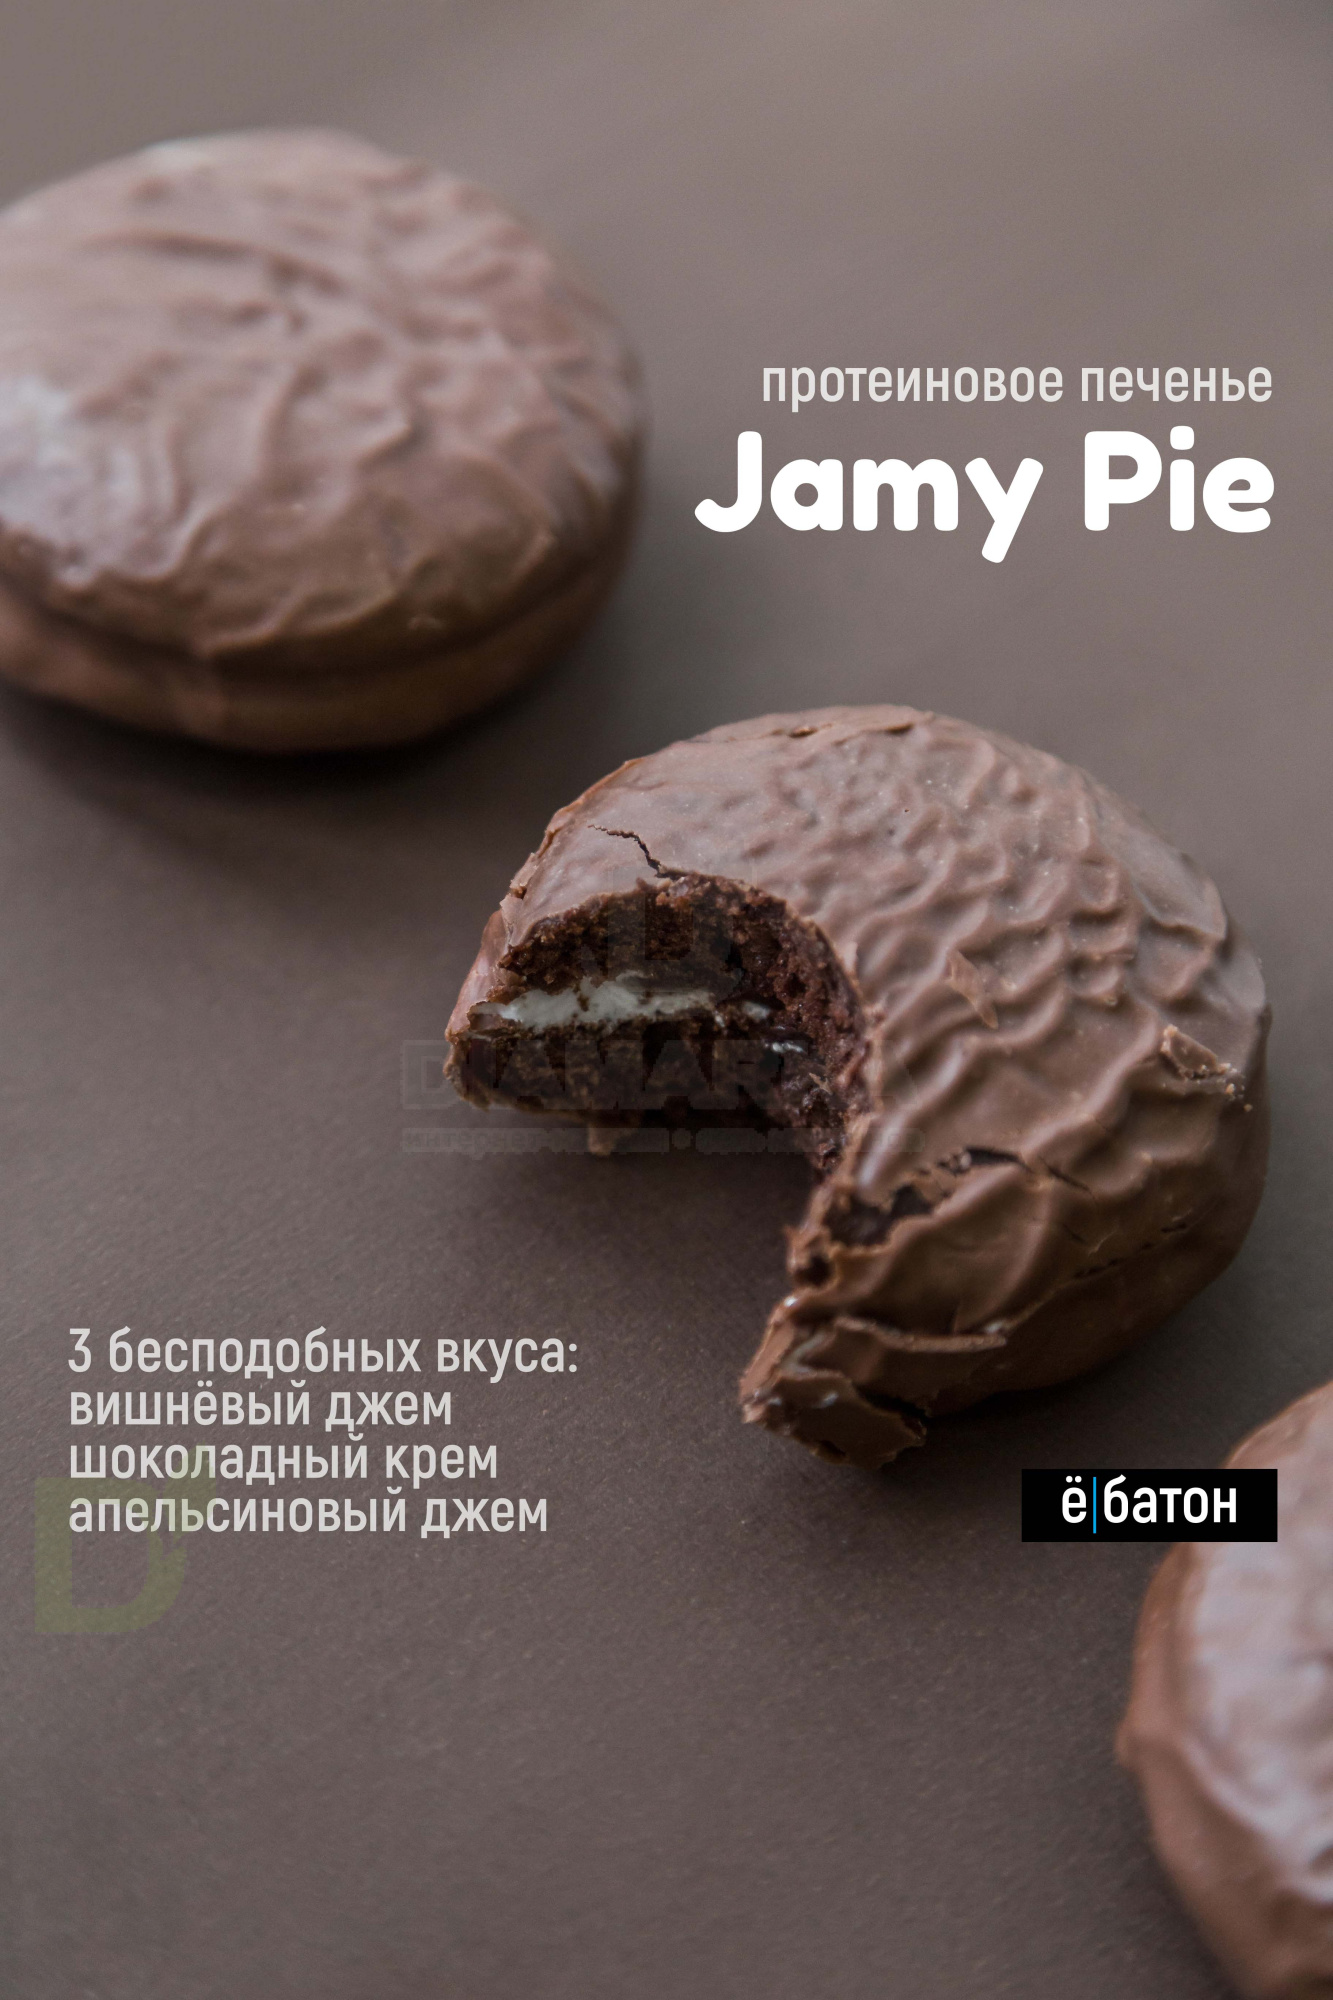 Печенье Ё/батон Jamy Pie протеиновое с суфле и джемом Апельсин 60гр